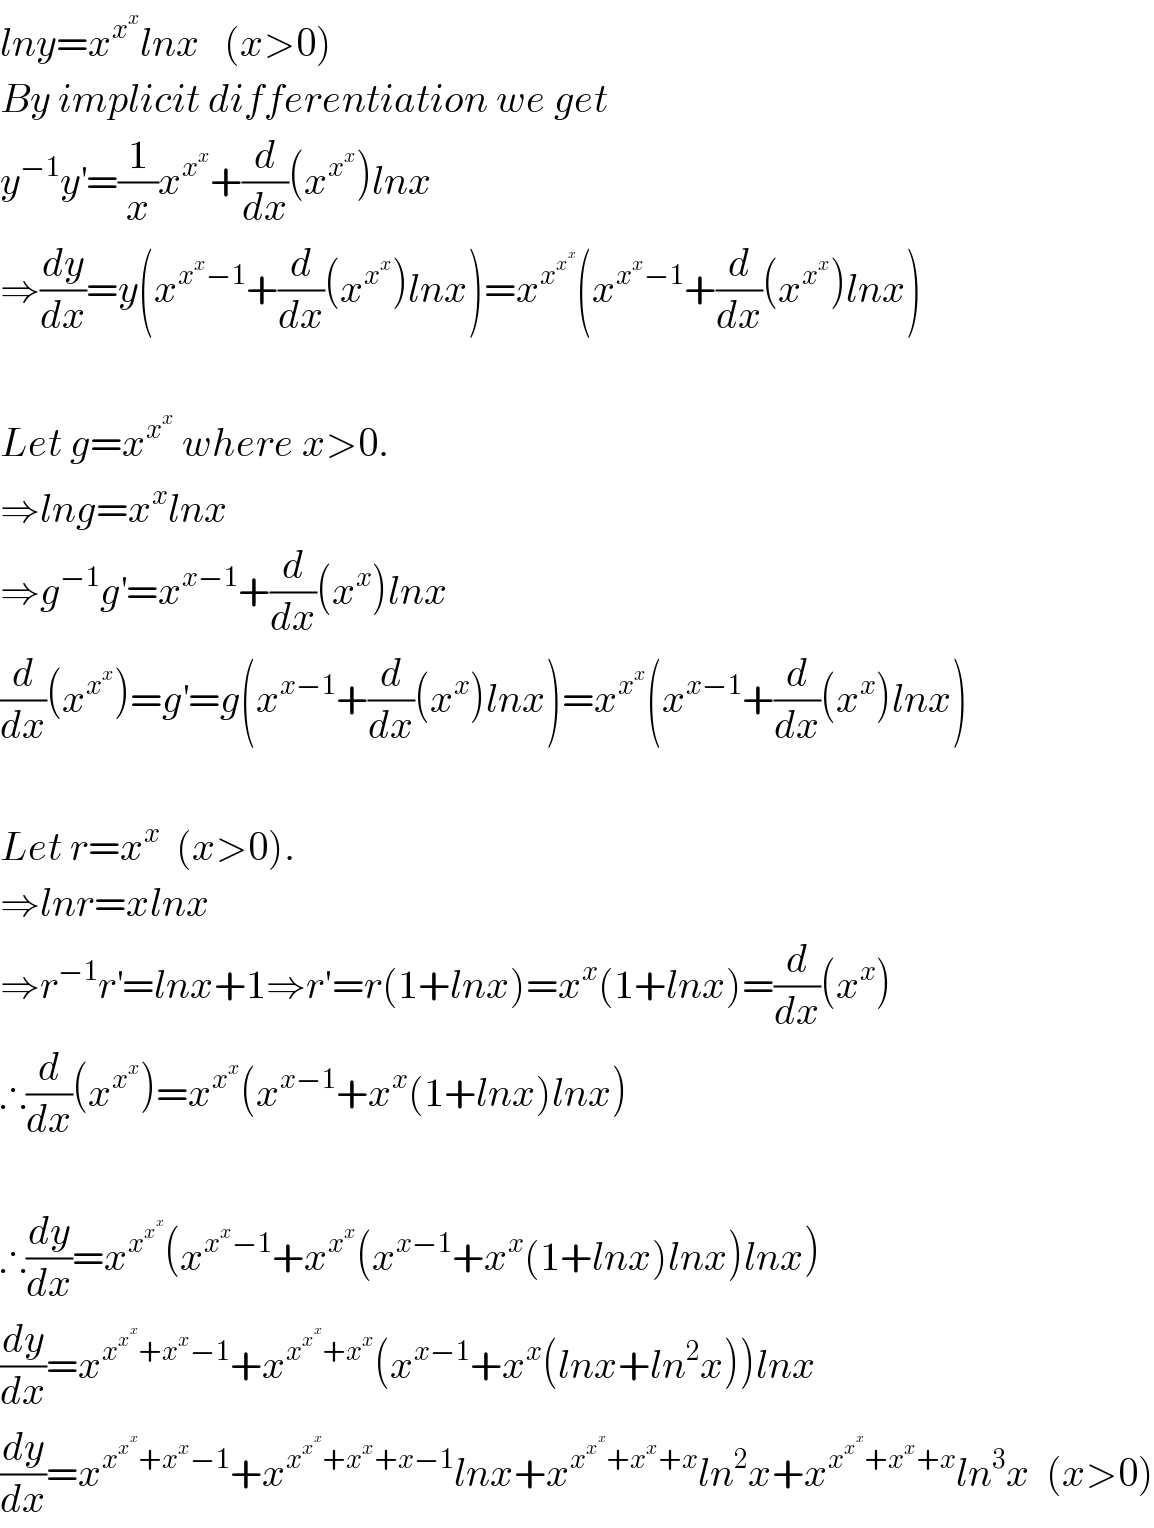 lny=x^x^x  lnx   (x>0)  By implicit differentiation we get  y^(−1) y^′ =(1/x)x^x^x  +(d/dx)(x^x^x  )lnx  ⇒(dy/dx)=y(x^(x^x −1) +(d/dx)(x^x^x  )lnx)=x^x^x^x   (x^(x^x −1) +(d/dx)(x^x^x  )lnx)    Let g=x^x^x   where x>0.  ⇒lng=x^x lnx  ⇒g^(−1) g^′ =x^(x−1) +(d/dx)(x^x )lnx  (d/dx)(x^x^x  )=g^′ =g(x^(x−1) +(d/dx)(x^x )lnx)=x^x^x  (x^(x−1) +(d/dx)(x^x )lnx)    Let r=x^x   (x>0).  ⇒lnr=xlnx  ⇒r^(−1) r^′ =lnx+1⇒r′=r(1+lnx)=x^x (1+lnx)=(d/dx)(x^x )  ∴(d/dx)(x^x^x  )=x^x^x  (x^(x−1) +x^x (1+lnx)lnx)    ∴(dy/dx)=x^x^x^x   (x^(x^x −1) +x^x^x  (x^(x−1) +x^x (1+lnx)lnx)lnx)  (dy/dx)=x^(x^x^x  +x^x −1) +x^(x^x^x  +x^x ) (x^(x−1) +x^x (lnx+ln^2 x))lnx  (dy/dx)=x^(x^x^x  +x^x −1) +x^(x^x^x  +x^x +x−1) lnx+x^(x^x^x  +x^x +x) ln^2 x+x^(x^x^x  +x^x +x) ln^3 x  (x>0)  